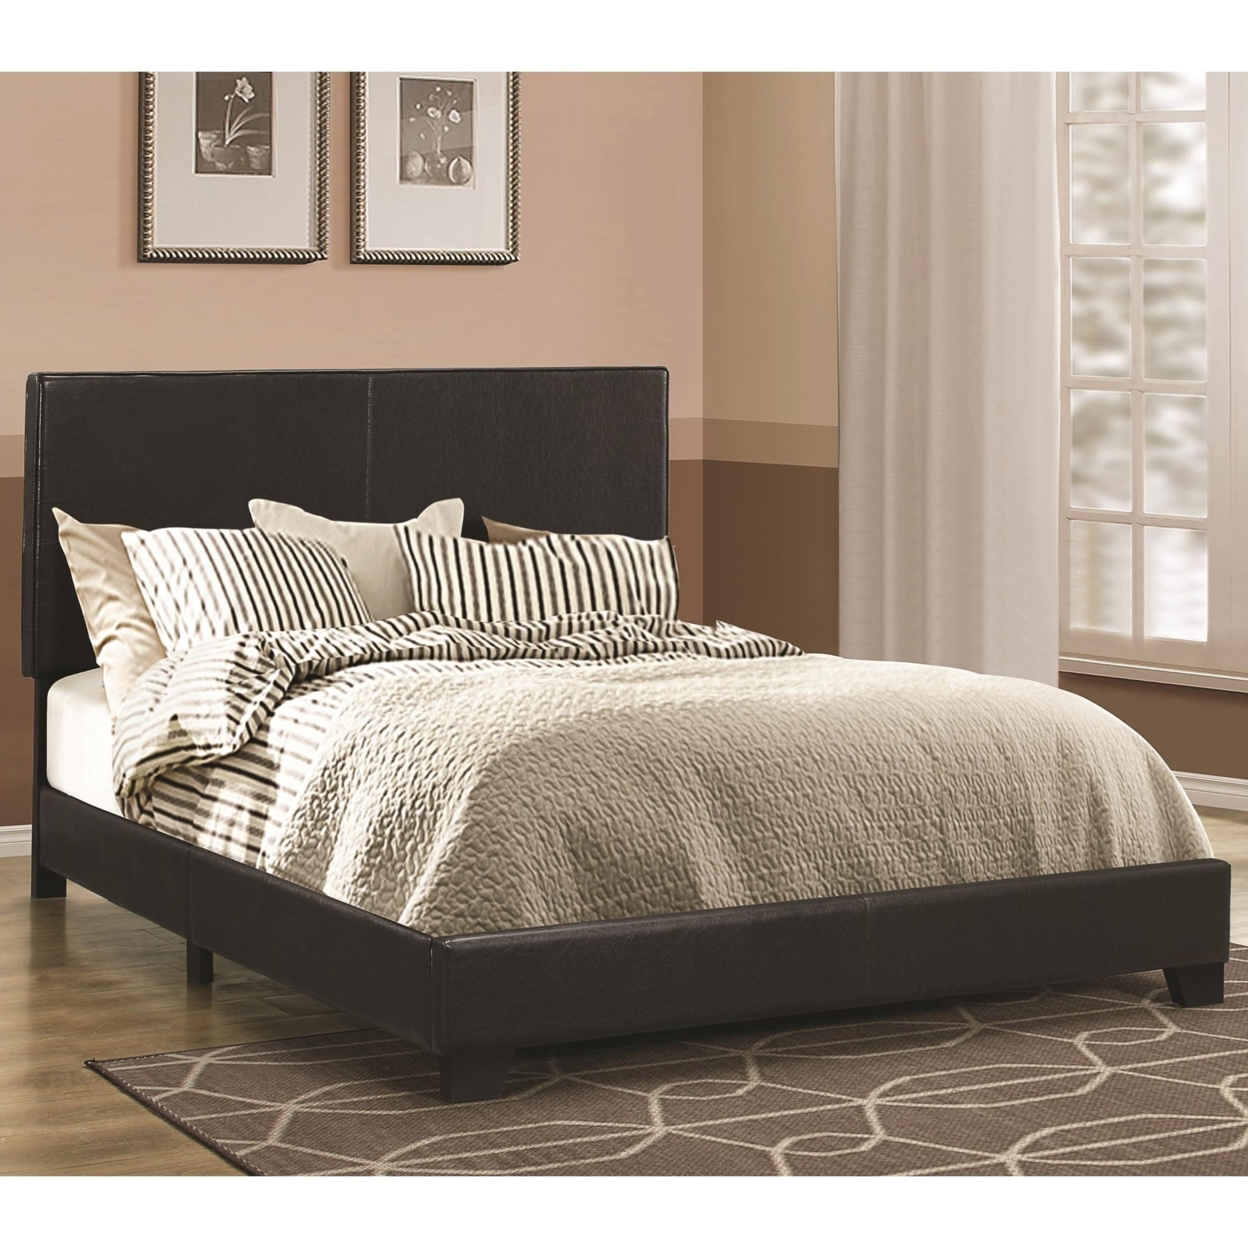 Leather Upholstered Twin Size Platform Bed, Black- Saltoro Sherpi